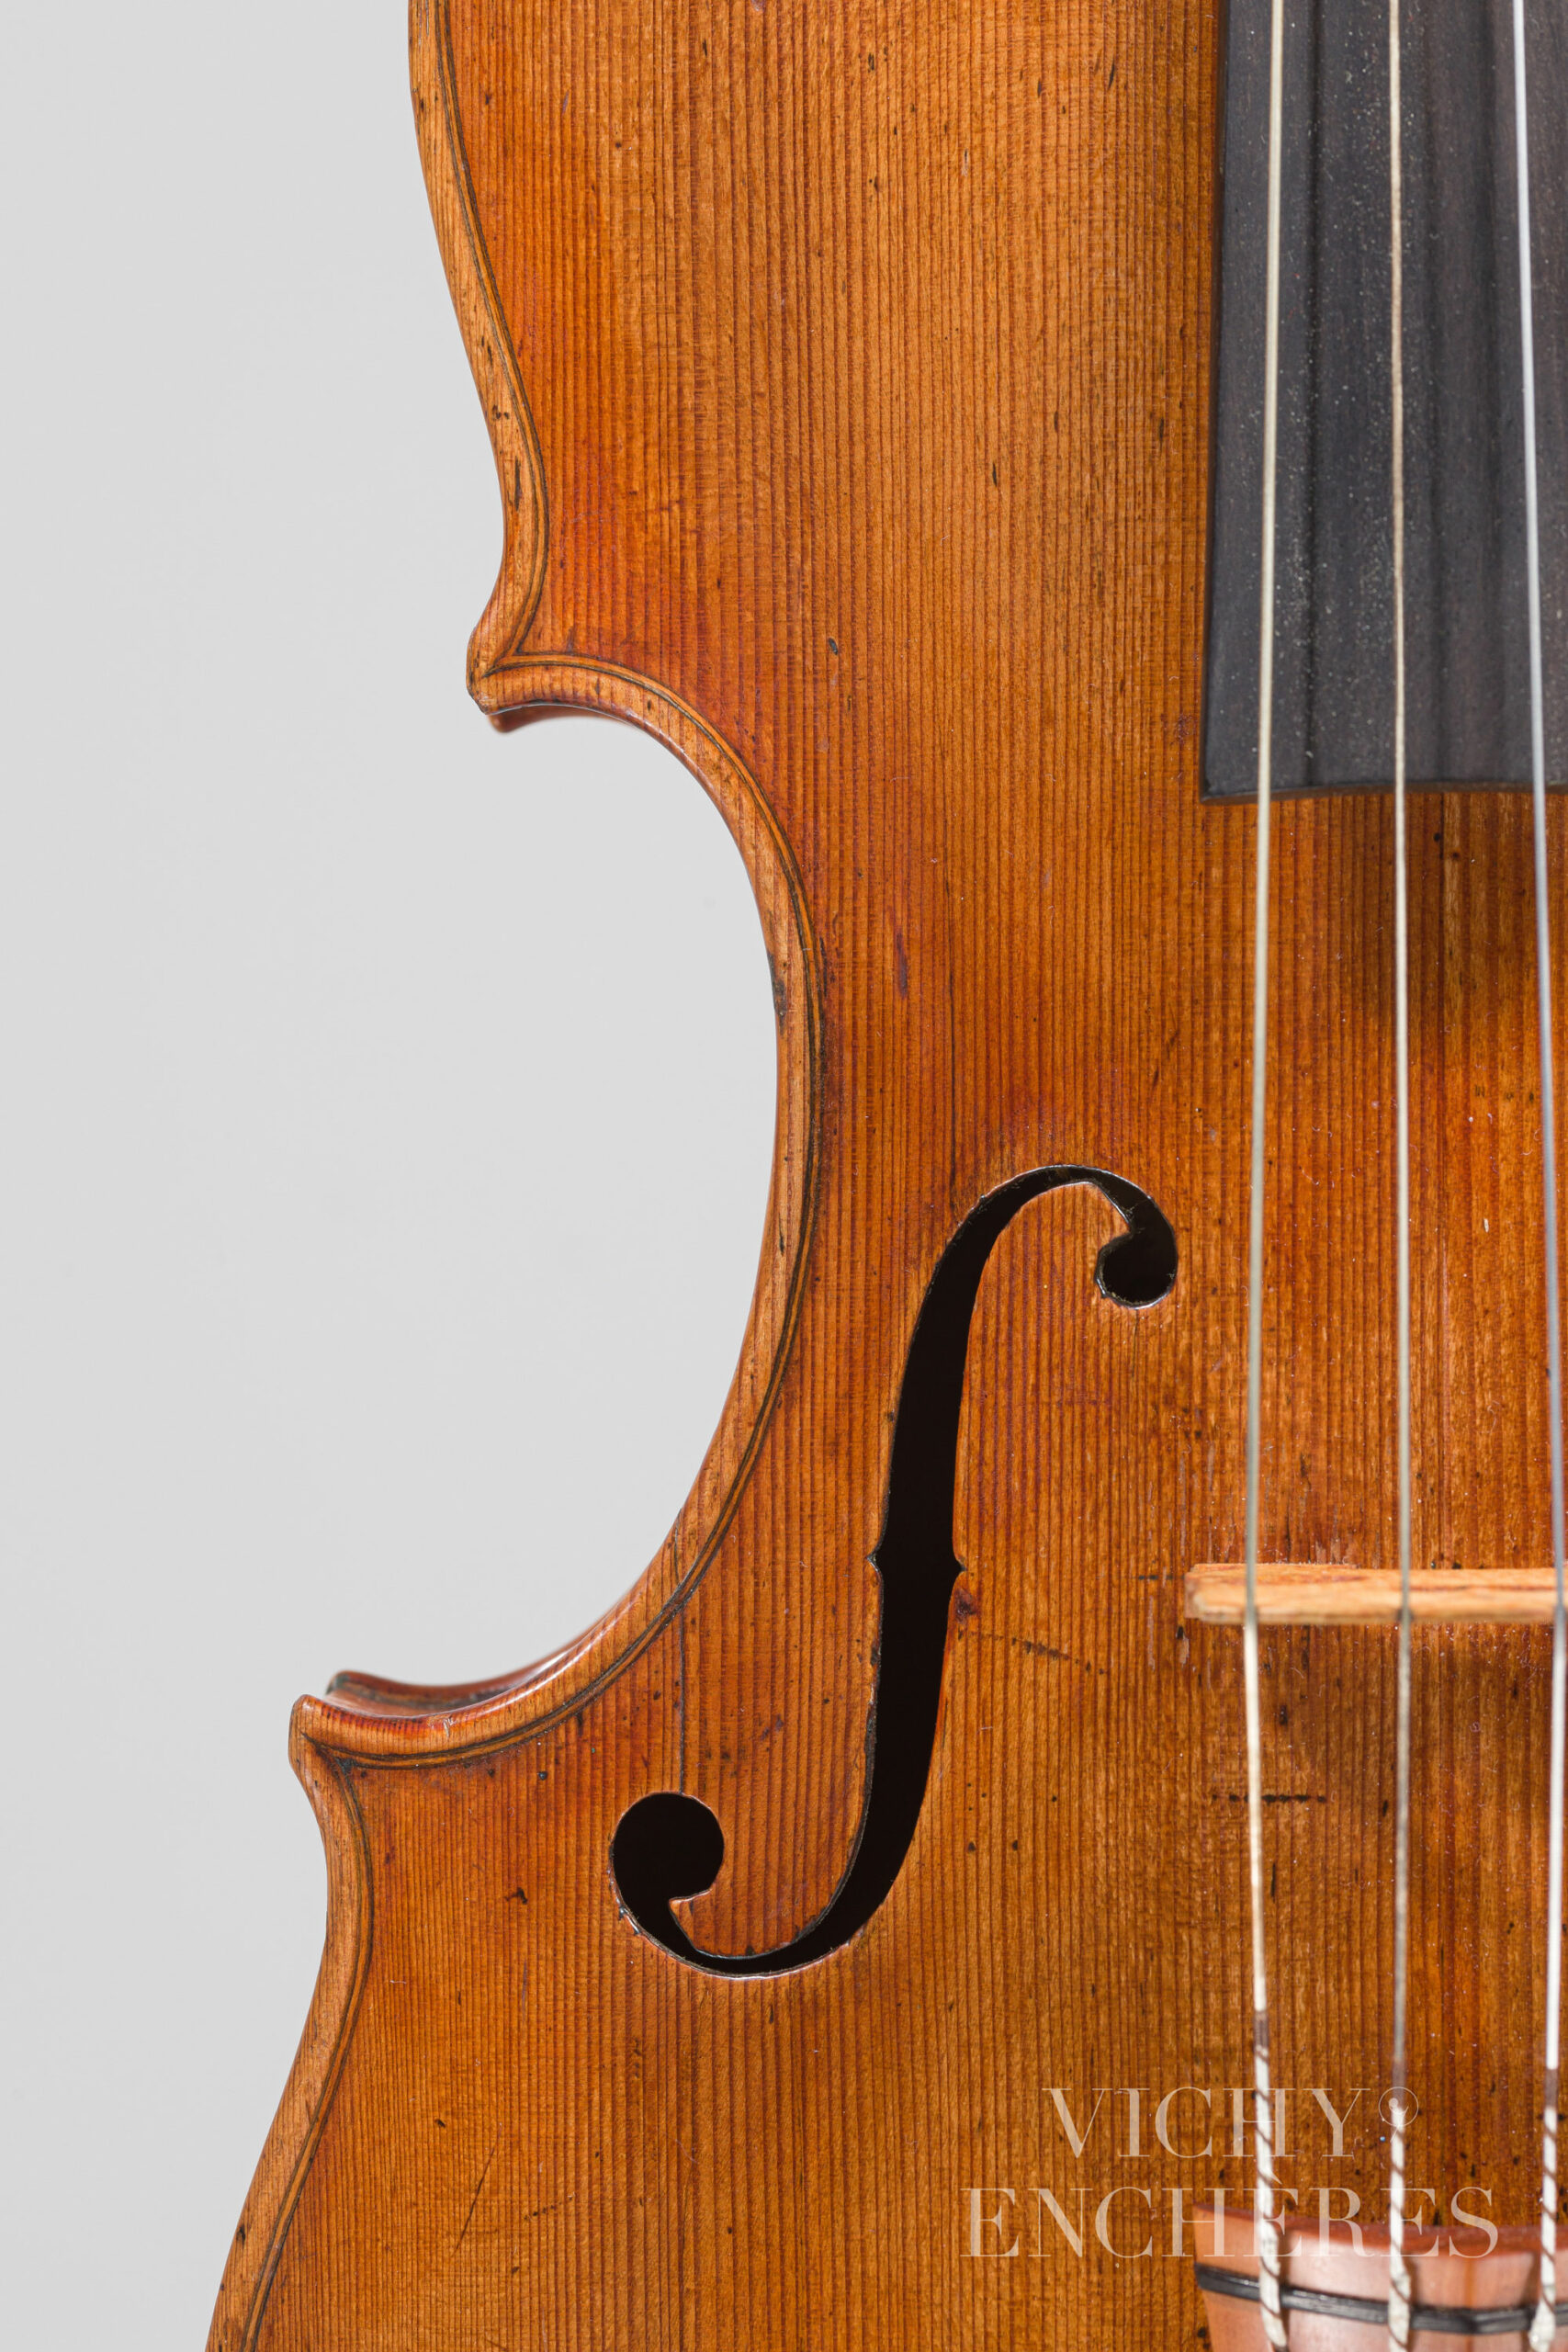 Violon de Louis GUERSAN Instrument mis en vente par Vichy Enchères le 1er décembre 2022 © Christophe Darbelet